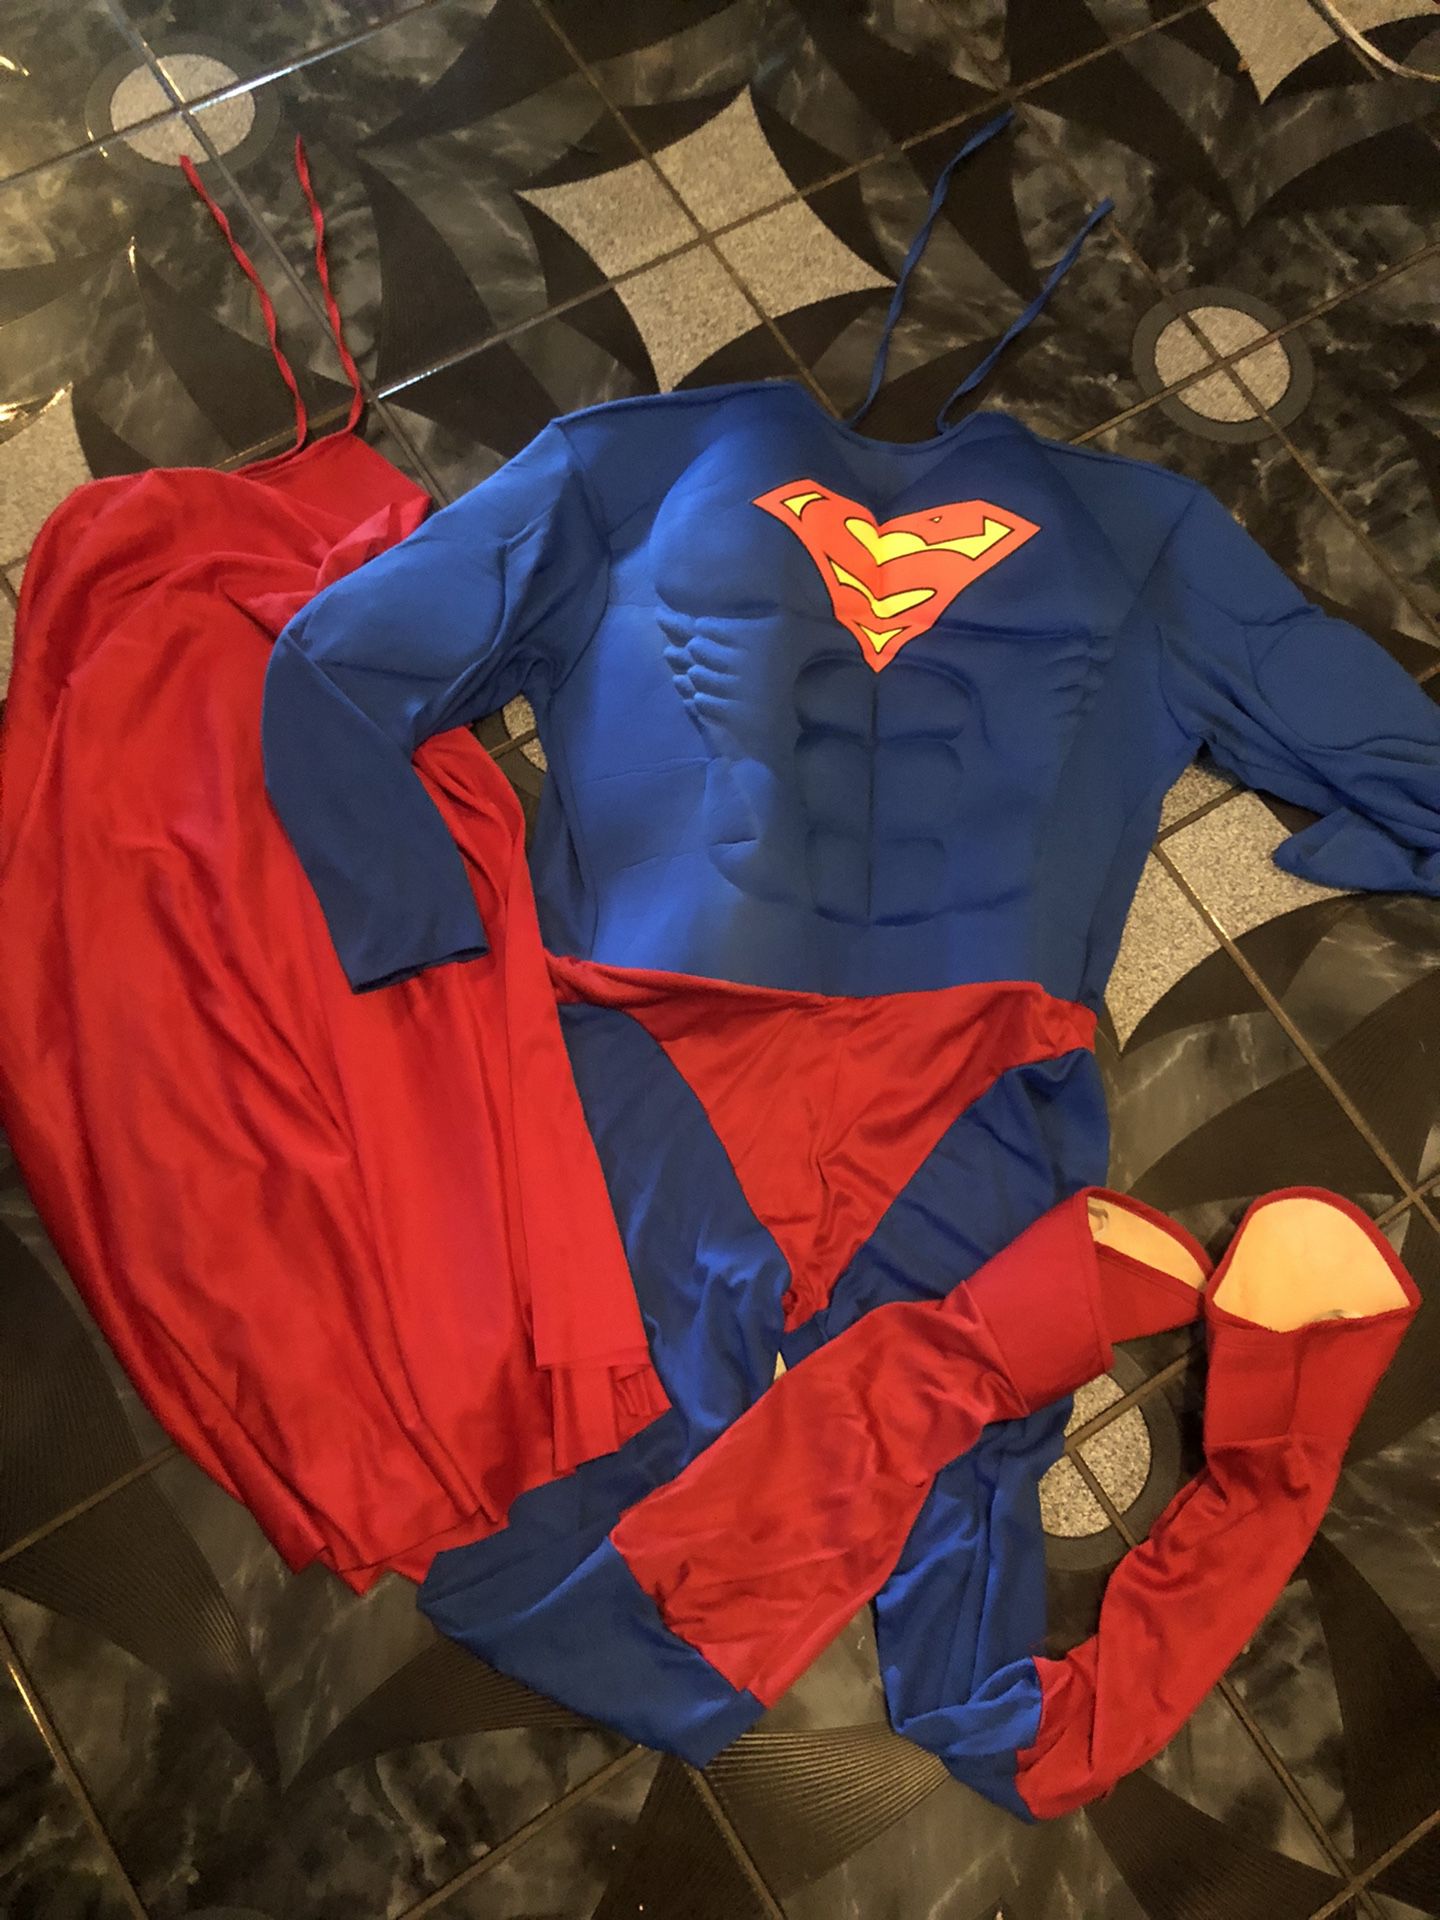 Adult Super Man Costumes 